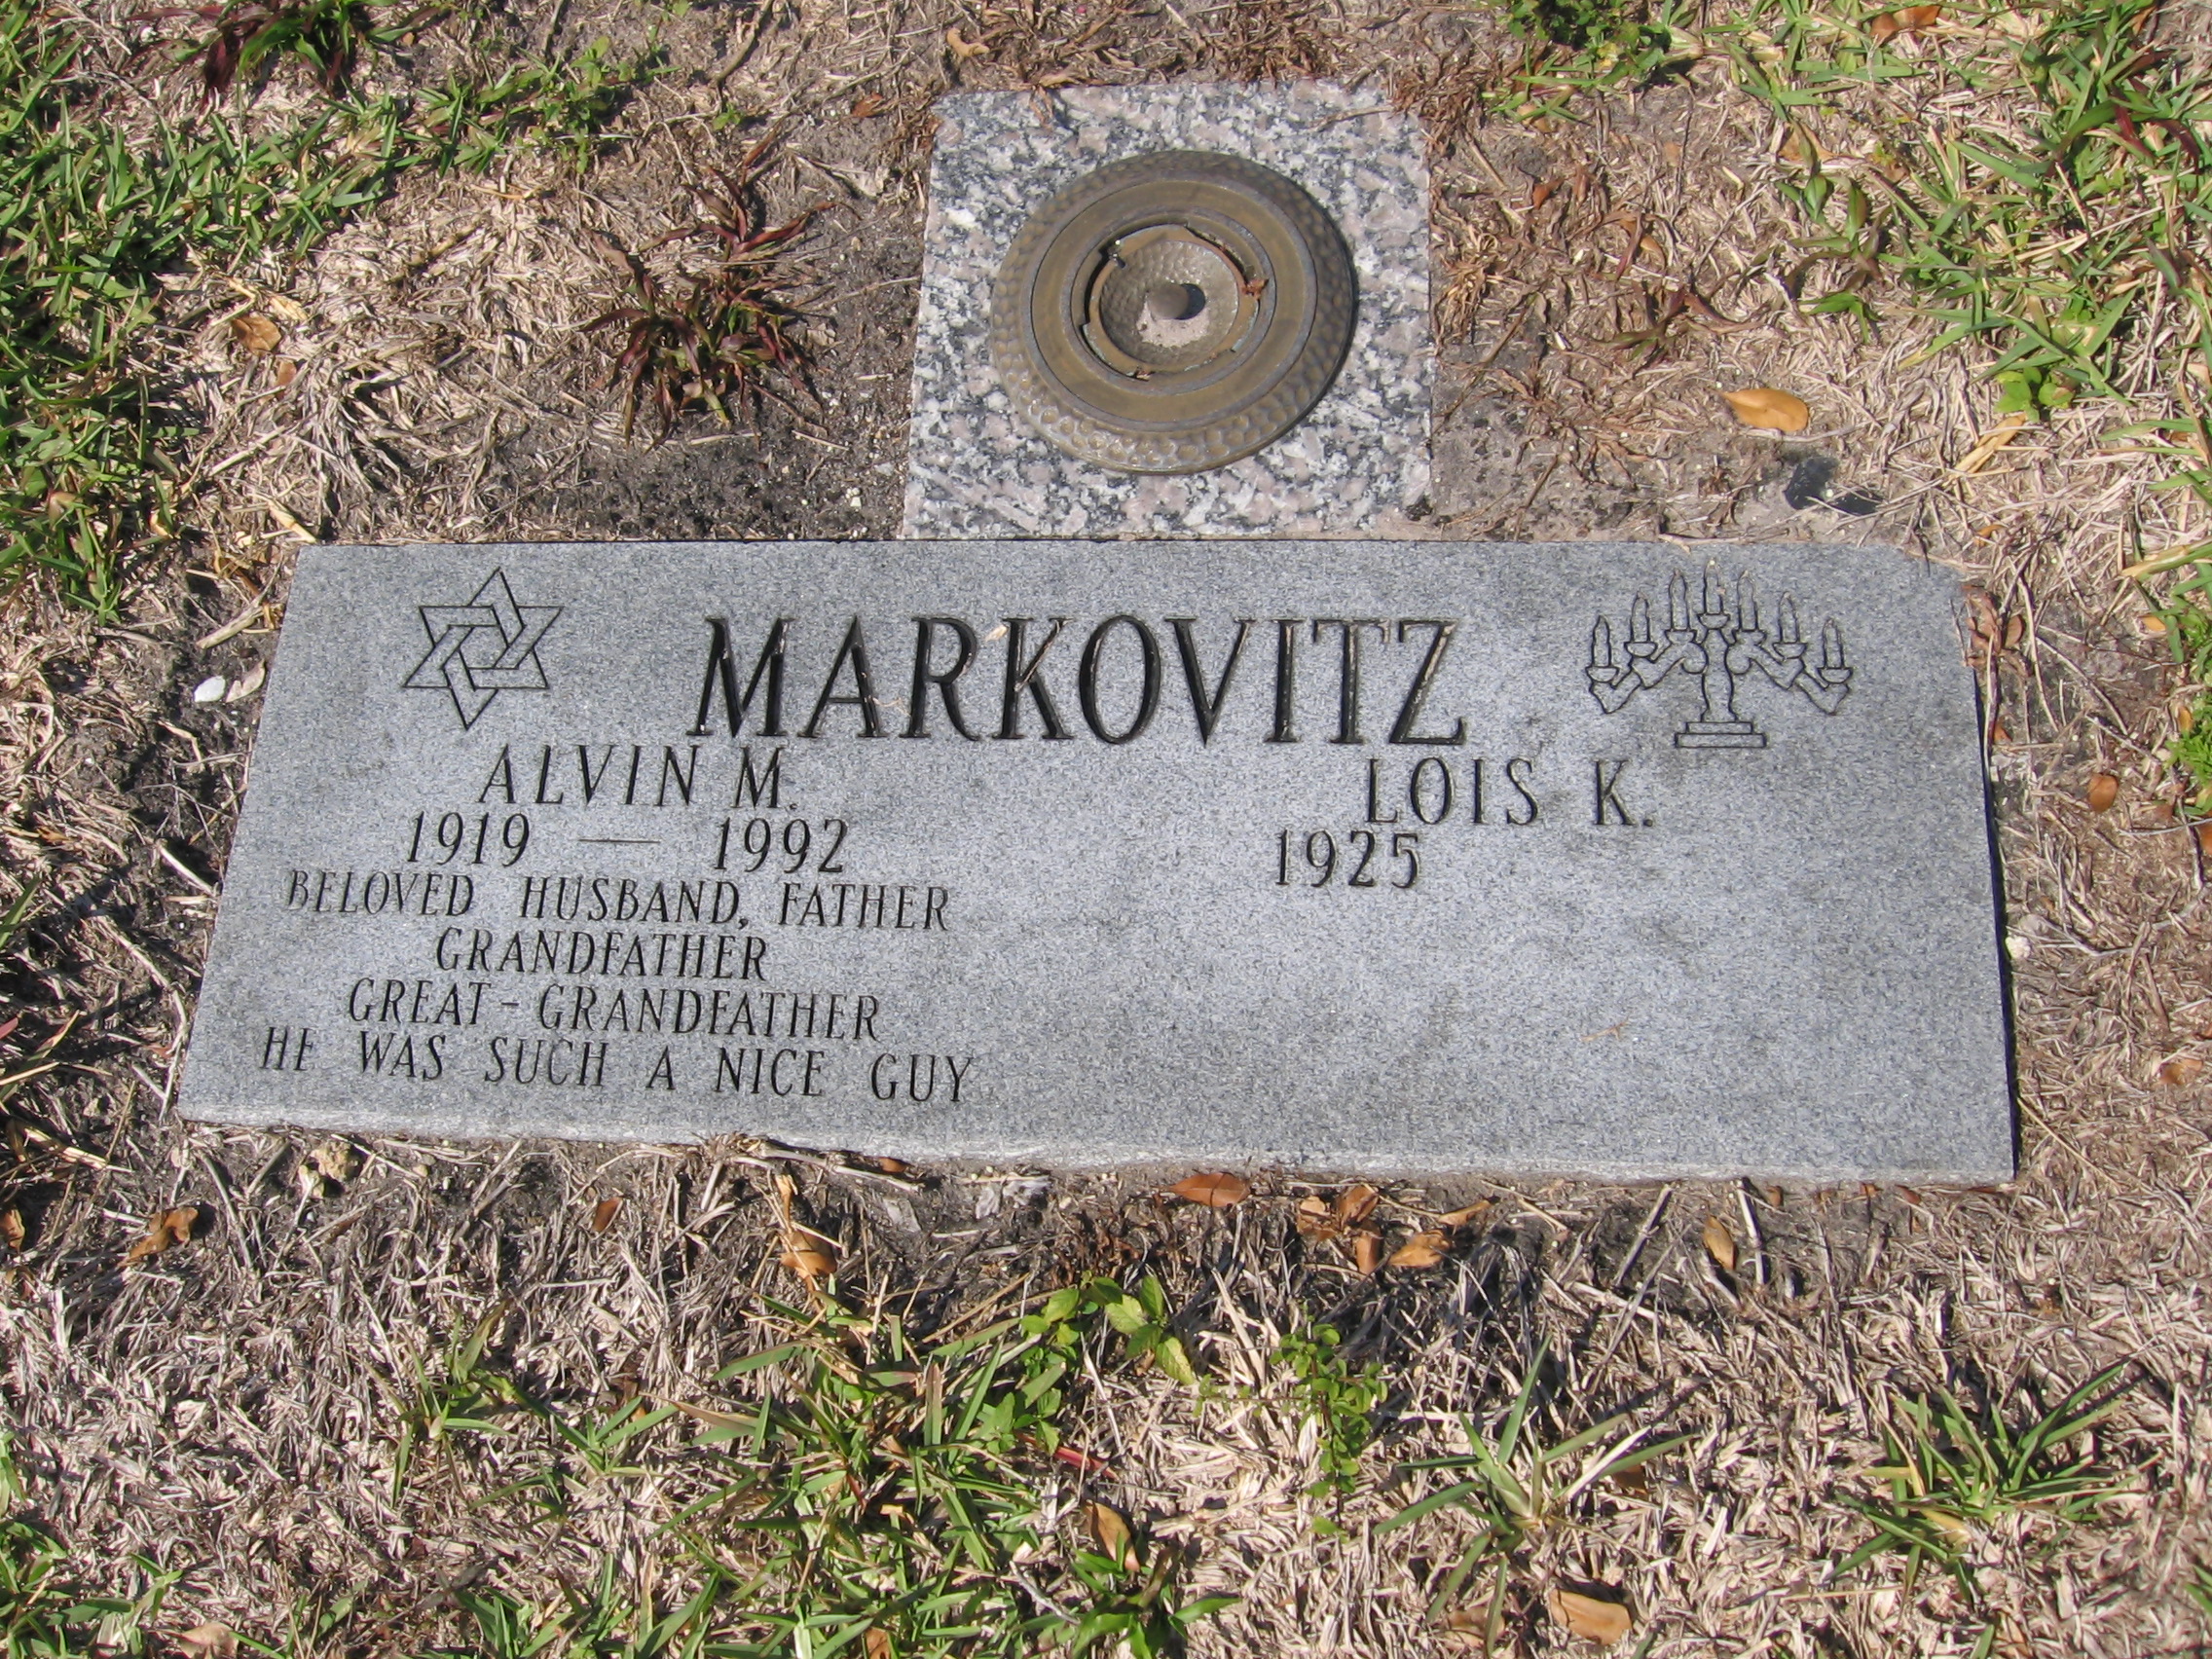 Lois K Markovitz